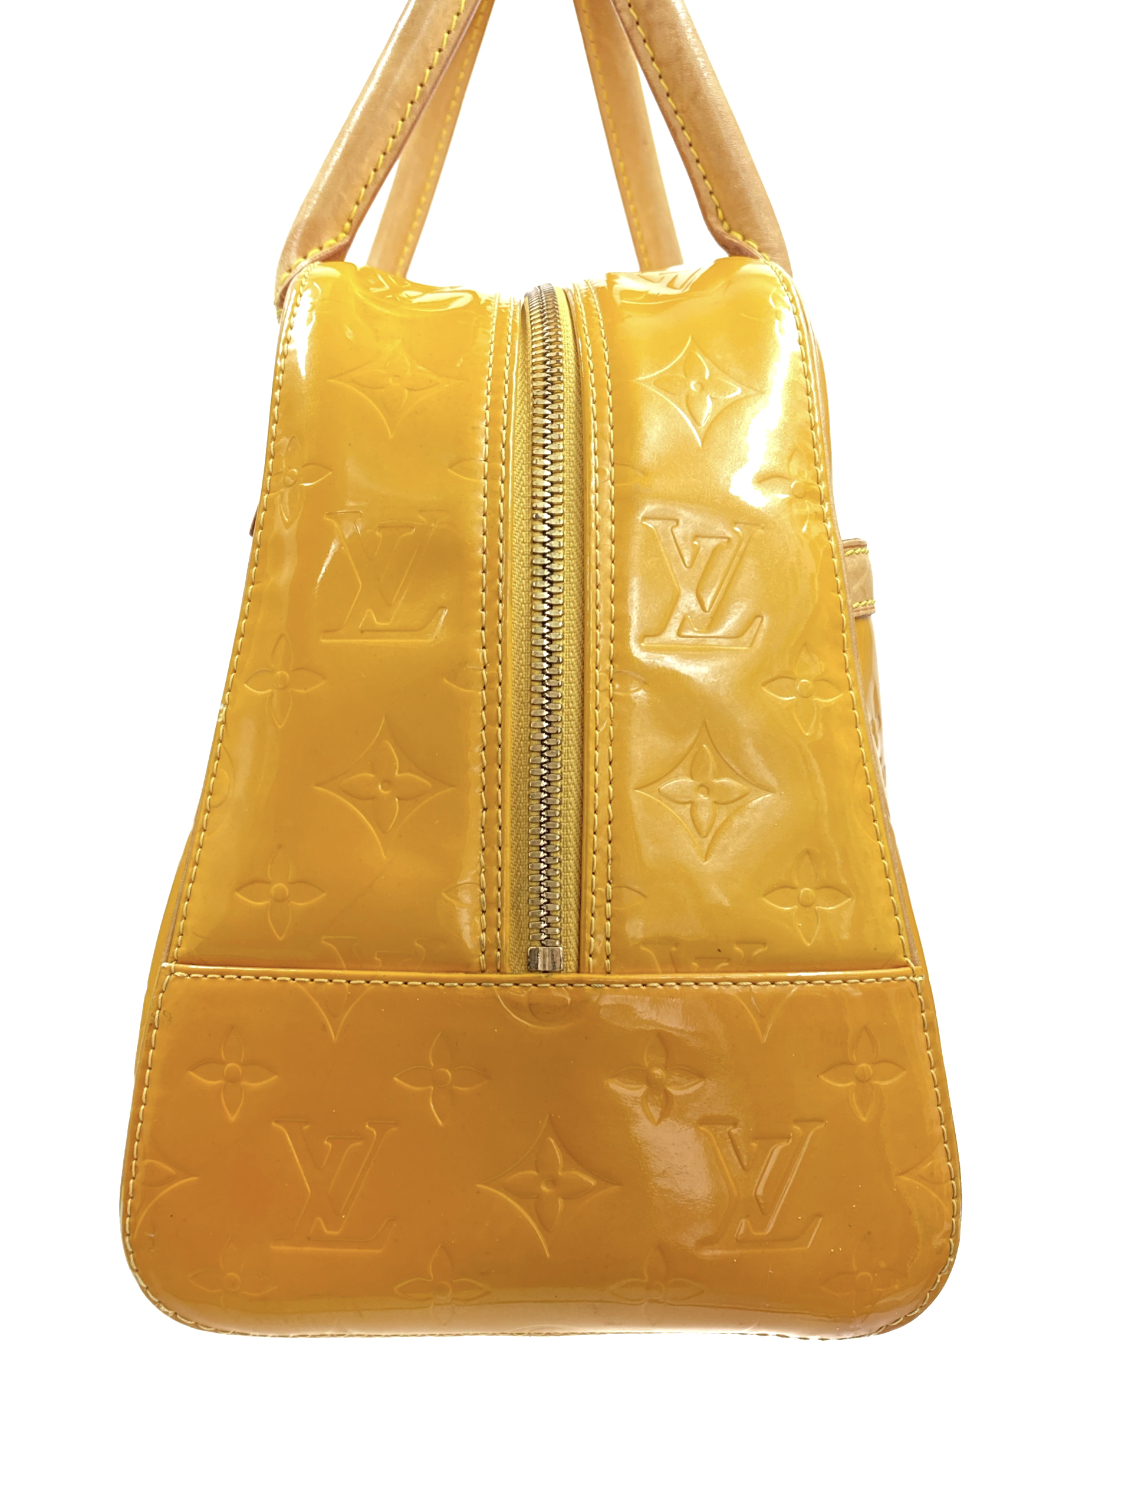 Louis Vuitton Large Yellow Handbag